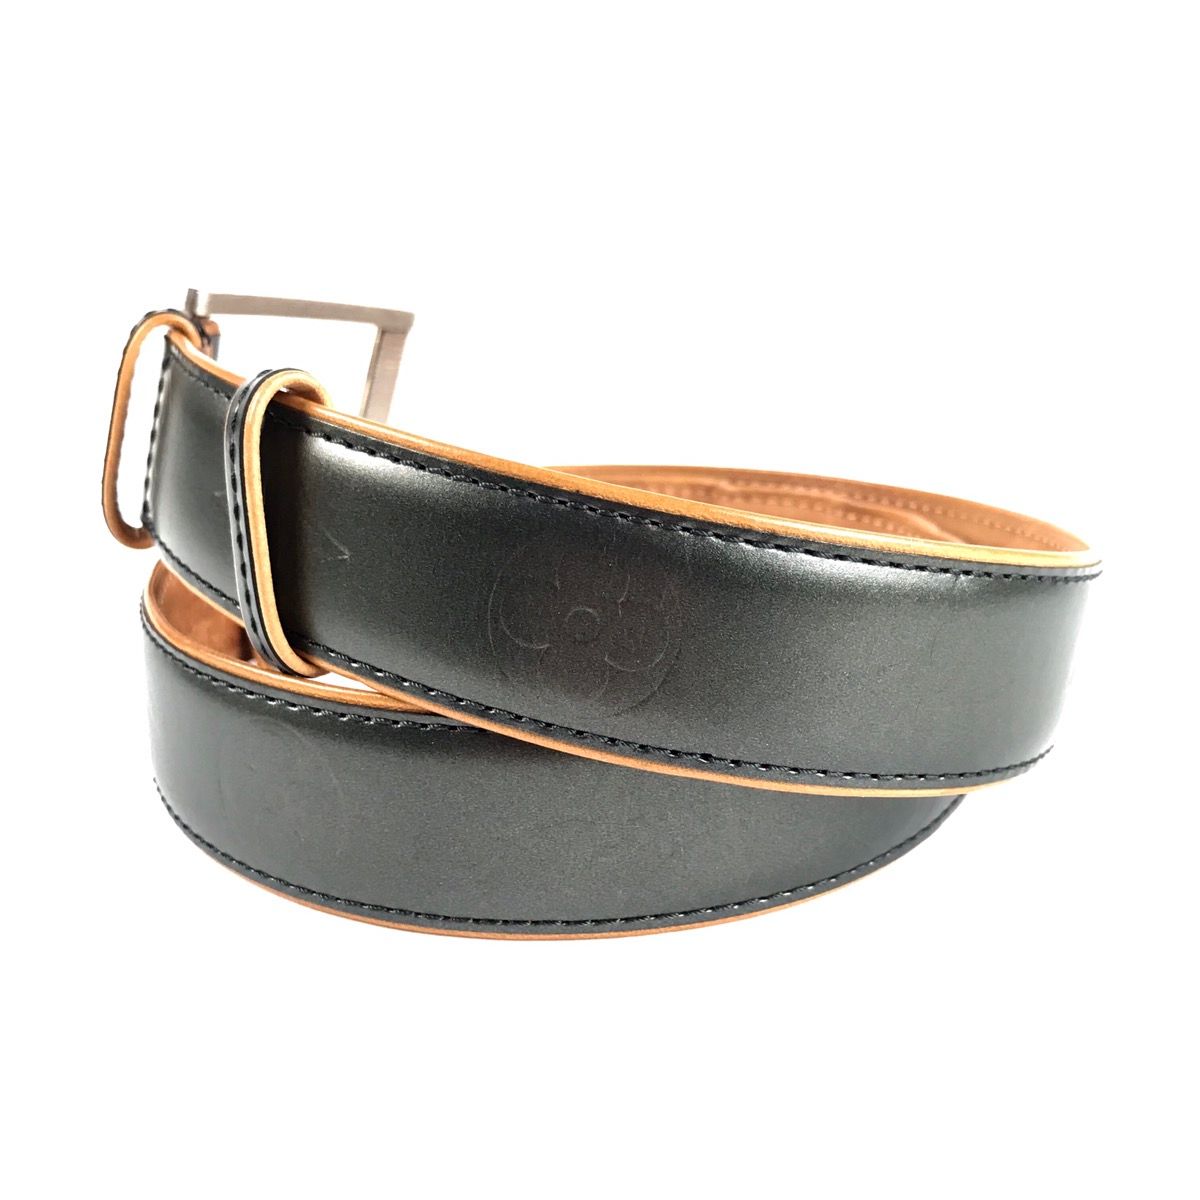 Pre-Owned & Vintage LOUIS VUITTON Belts for Men